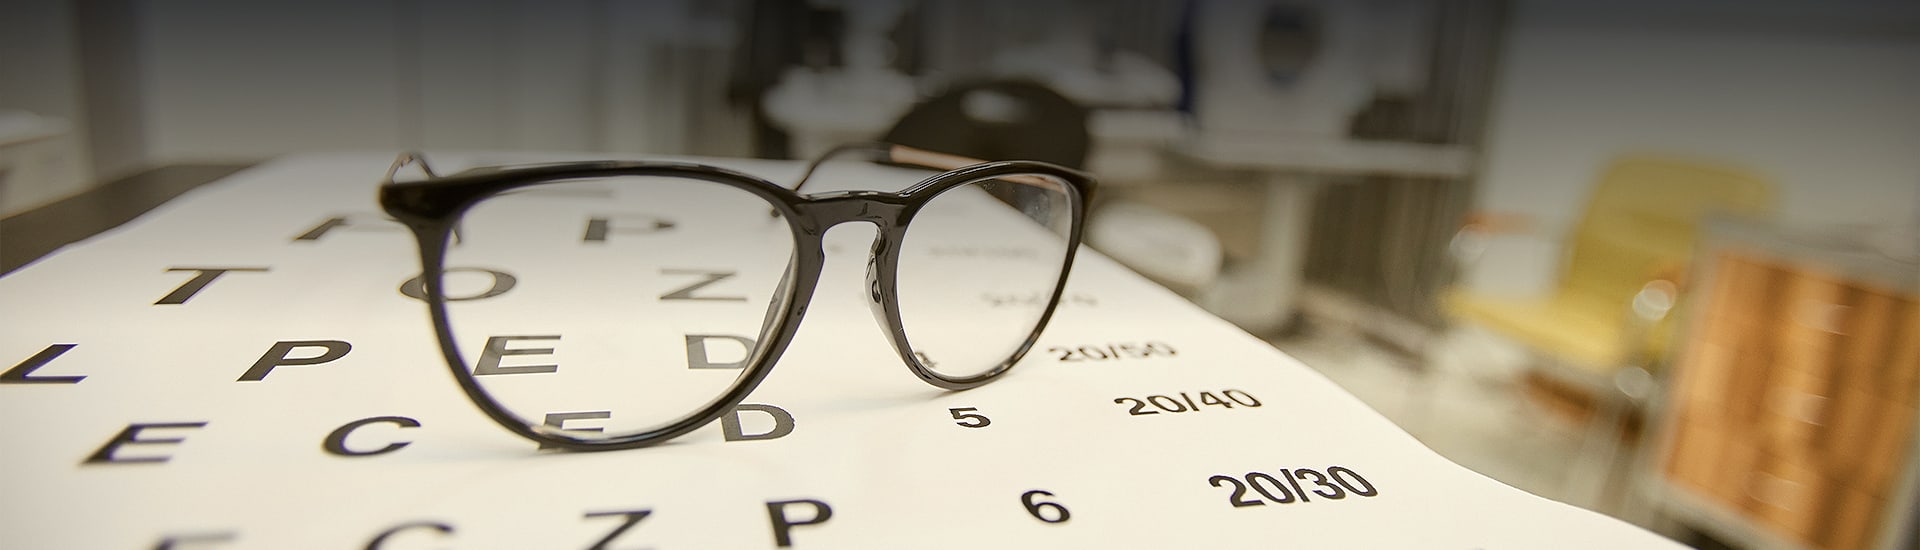 black glasses frames in an office